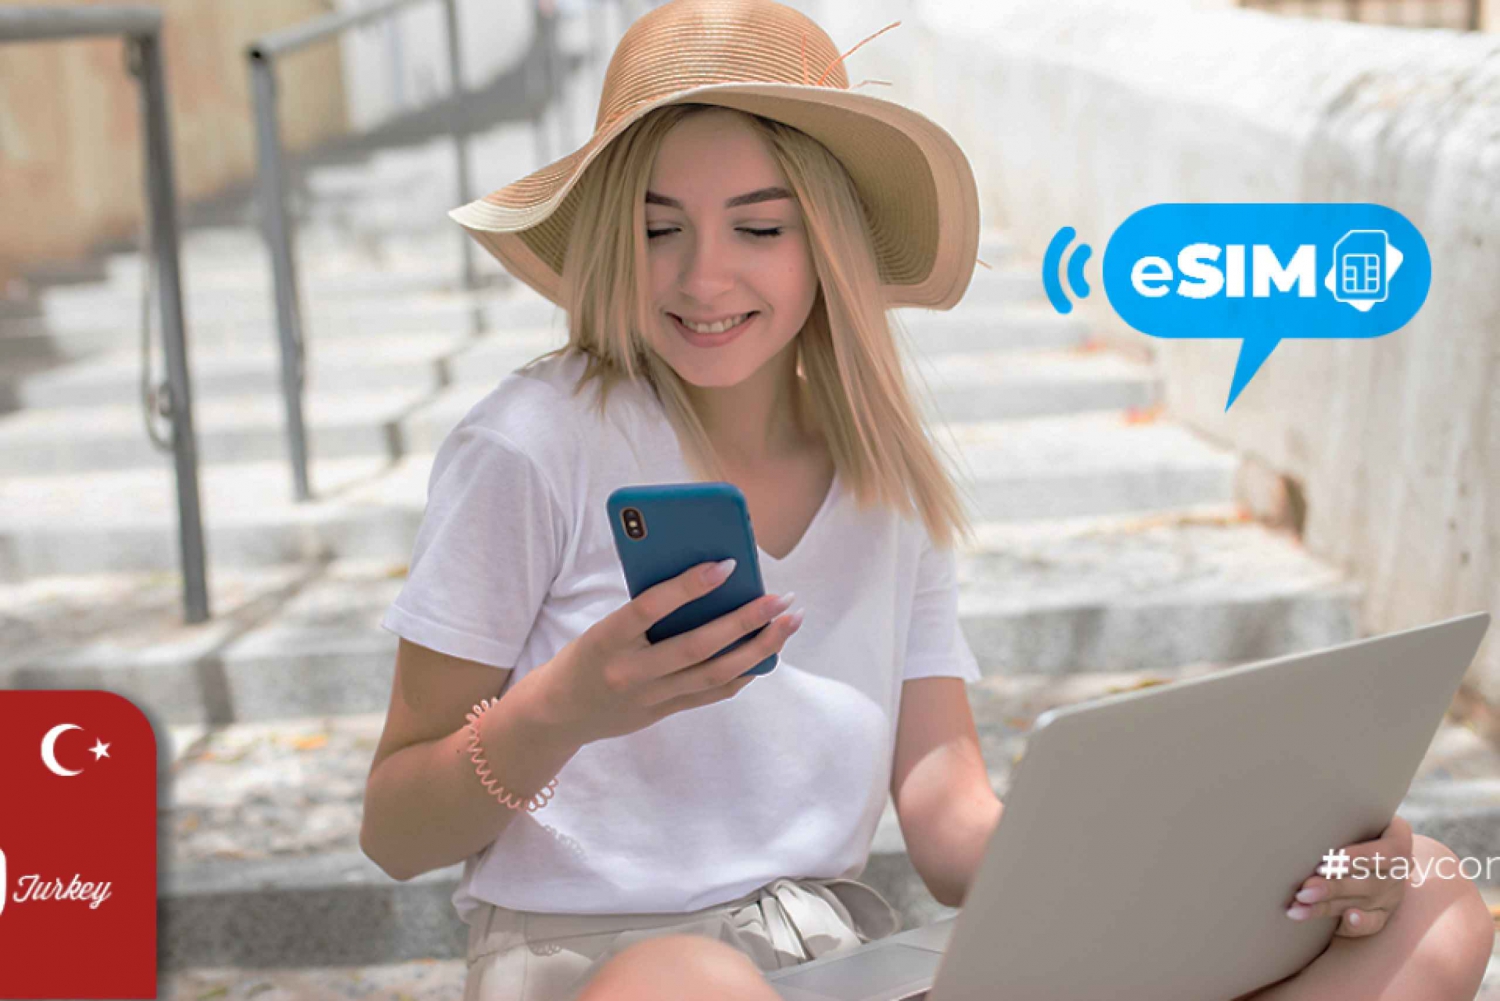 Izmir / Turcja: Internet w roamingu z mobilną transmisją danych eSIM